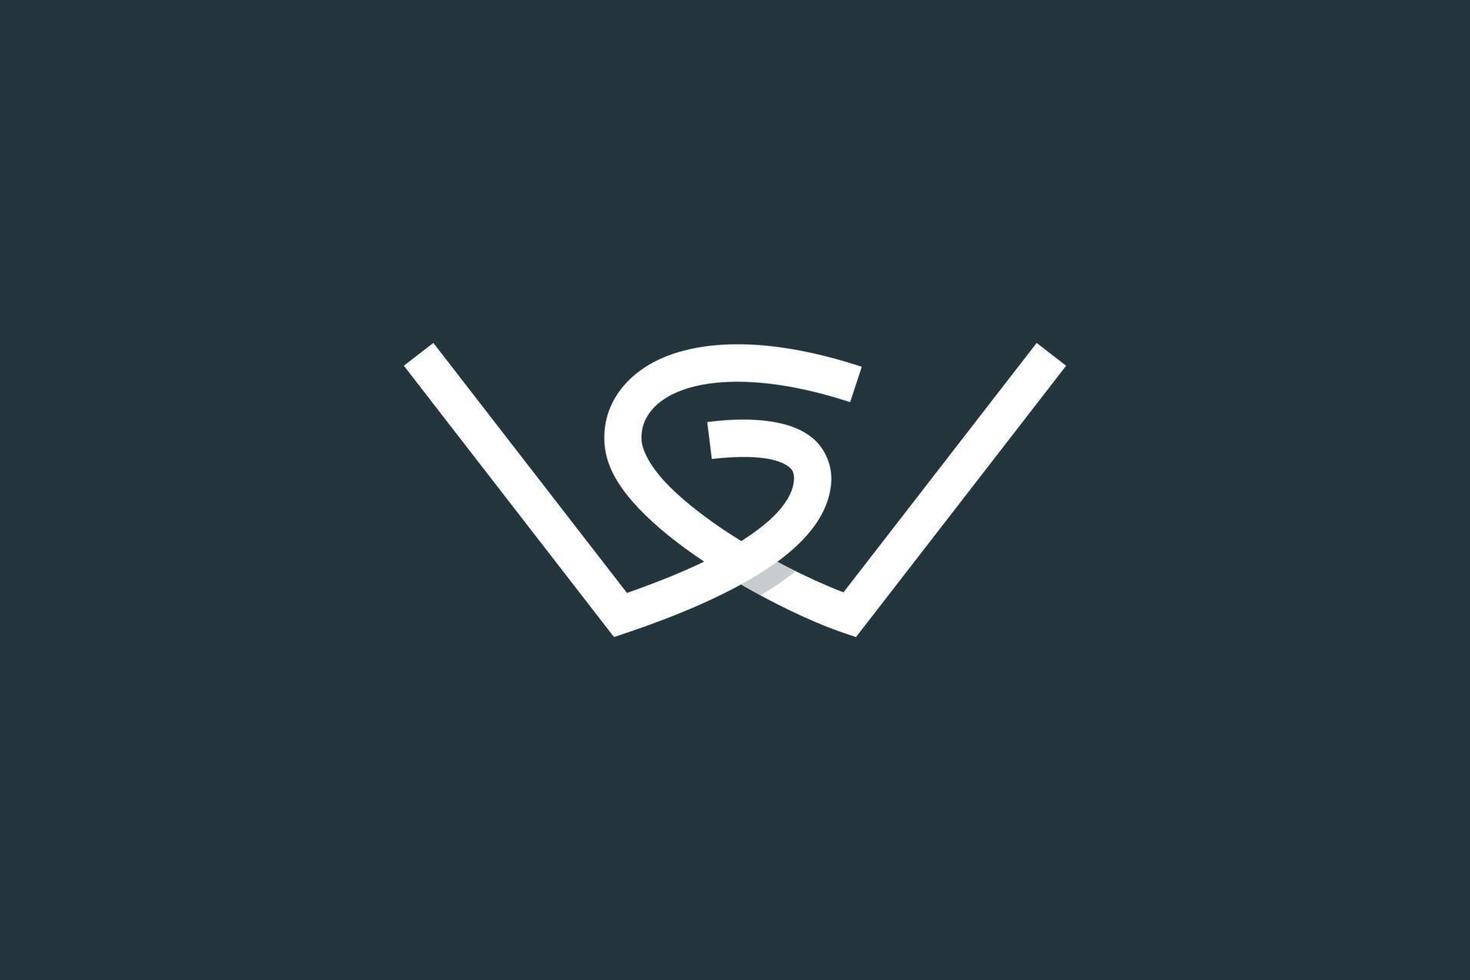 eerste letter wg logo of gw logo vector ontwerpsjabloon